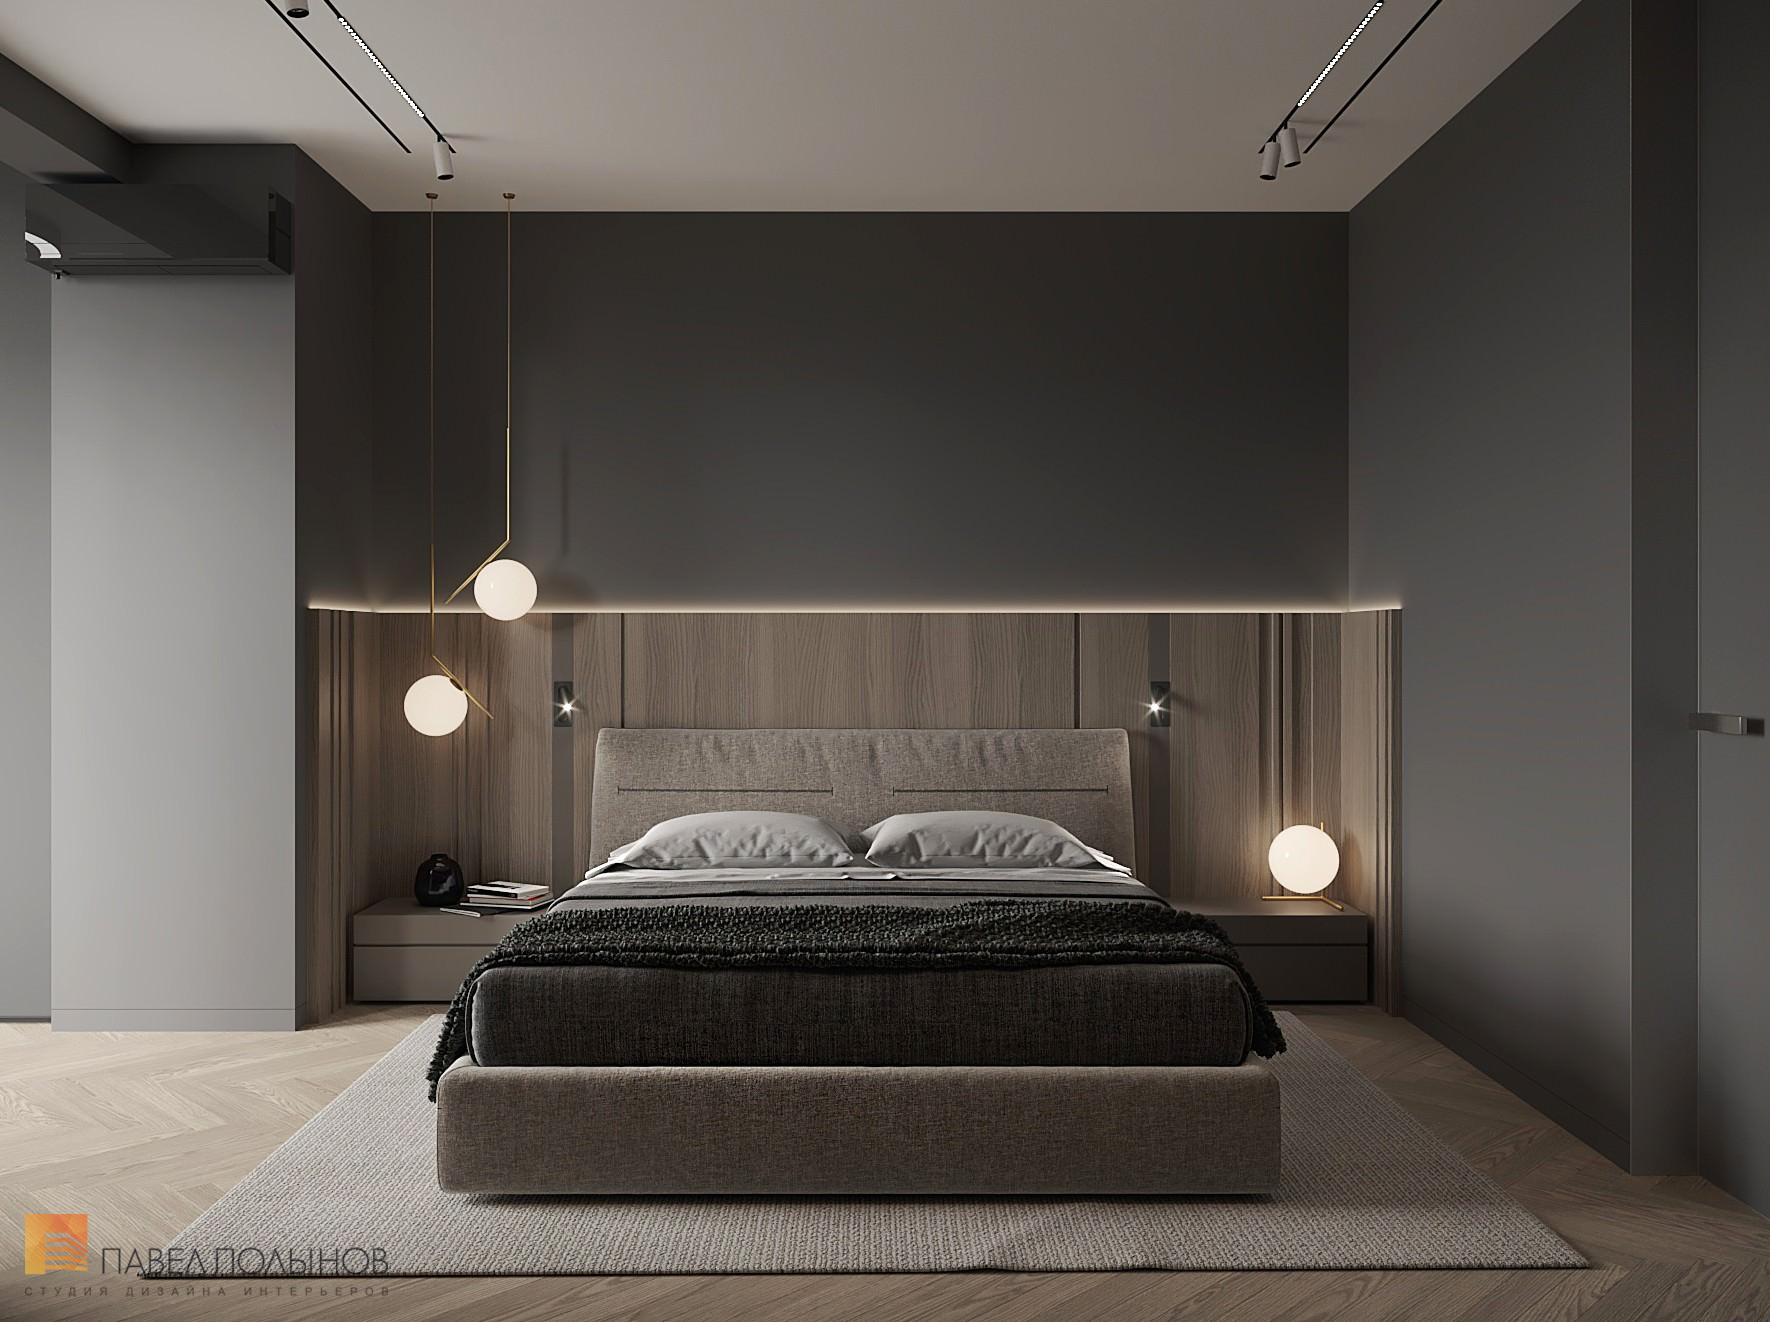 Фото спальня из проекта «Просторная квартира в современном стиле, ЖК «Duderhof Club», 146 кв.м.»